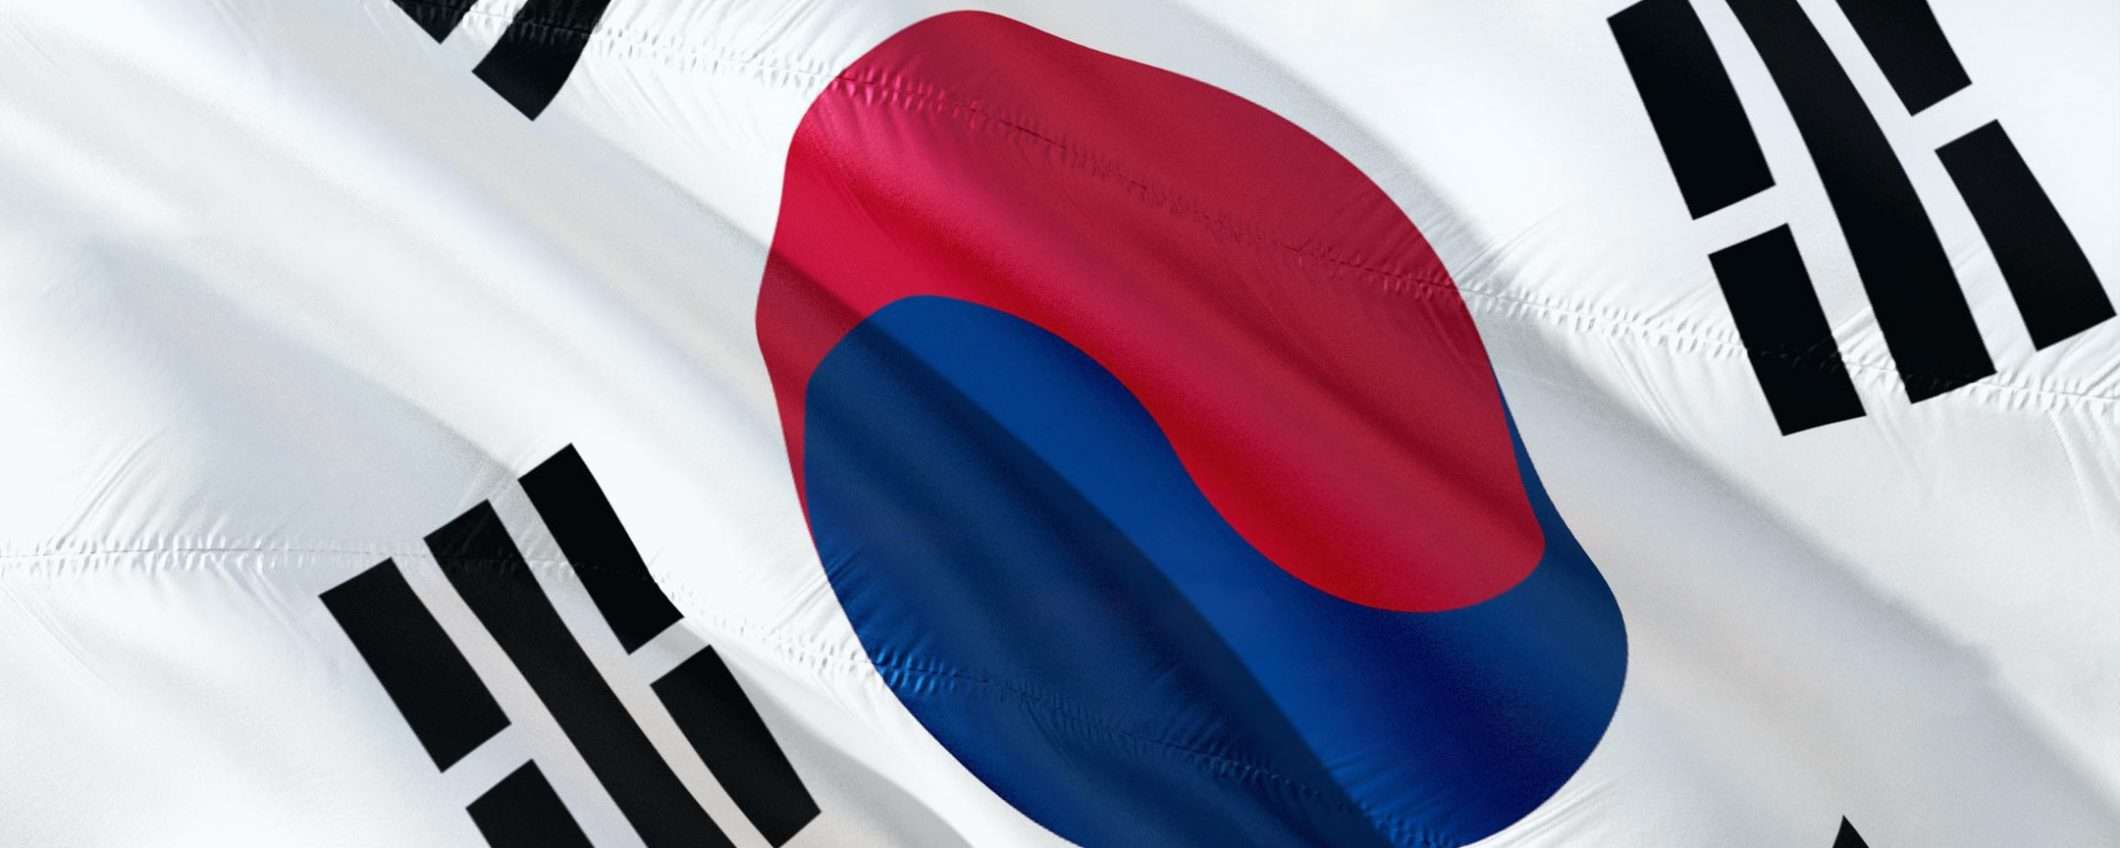 Samsung: l'arresto di Jay Y Lee è stato negato